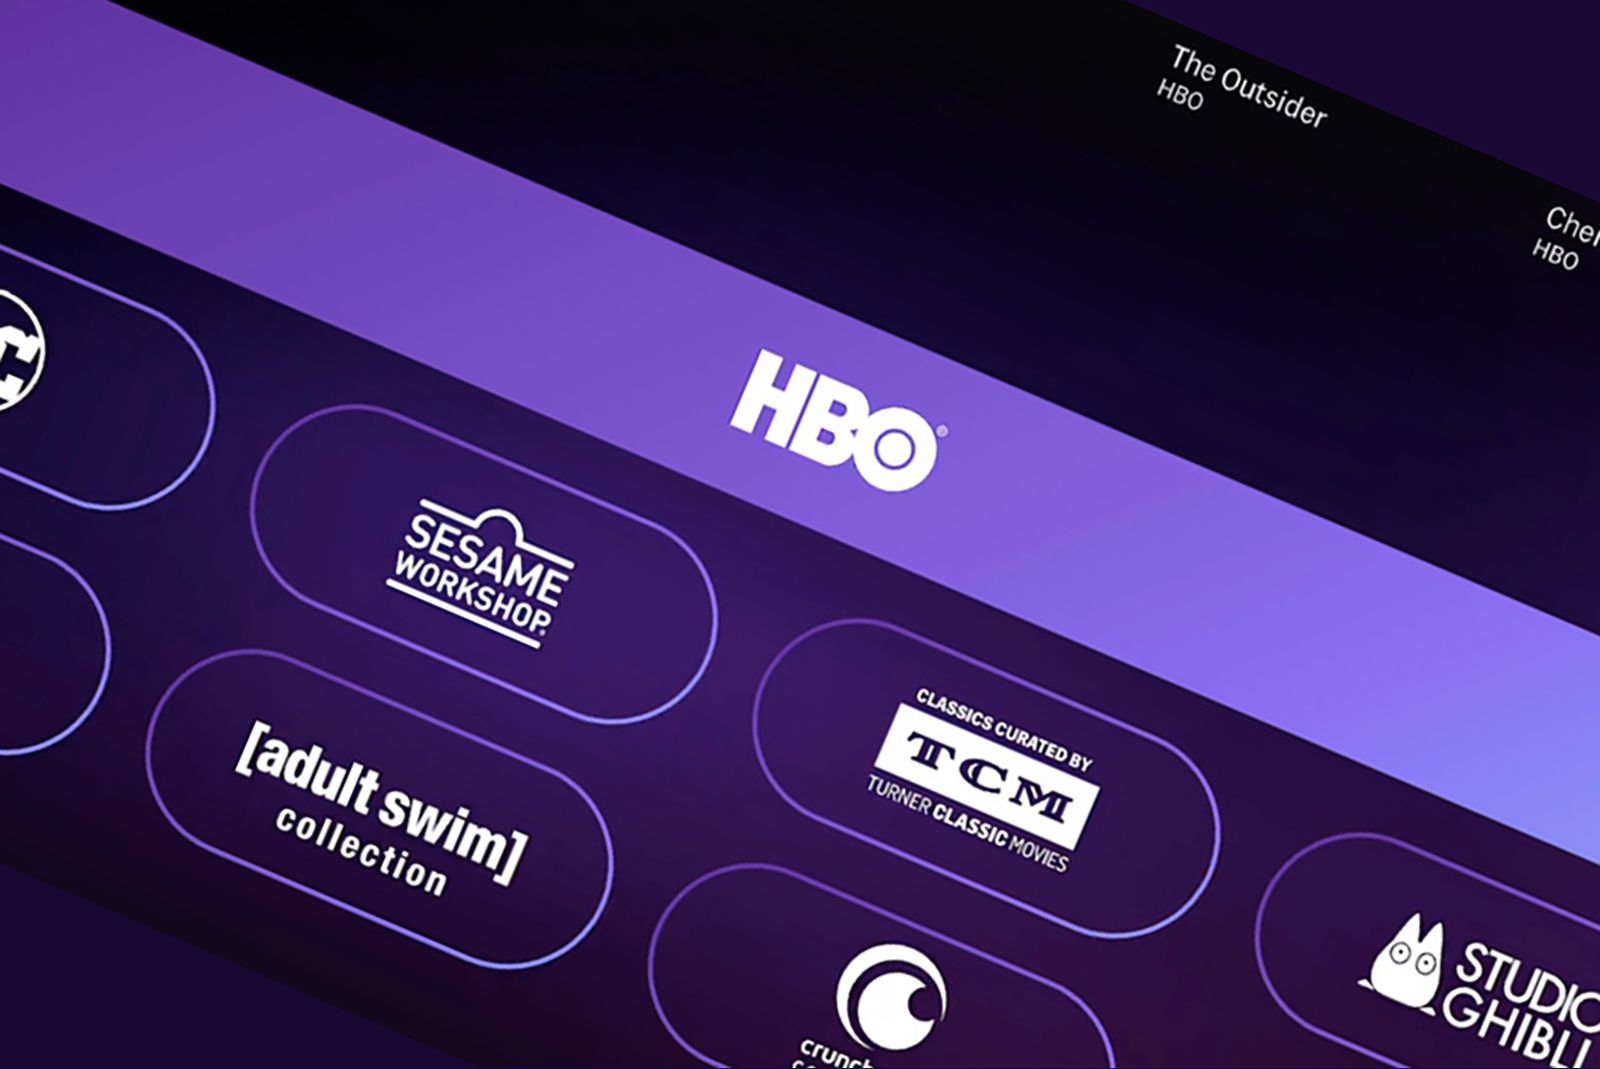 HBO Max: Mercado Livre derruba desconto para assinantes do Nível 6 -  Notícias Cinema - BCharts Fórum